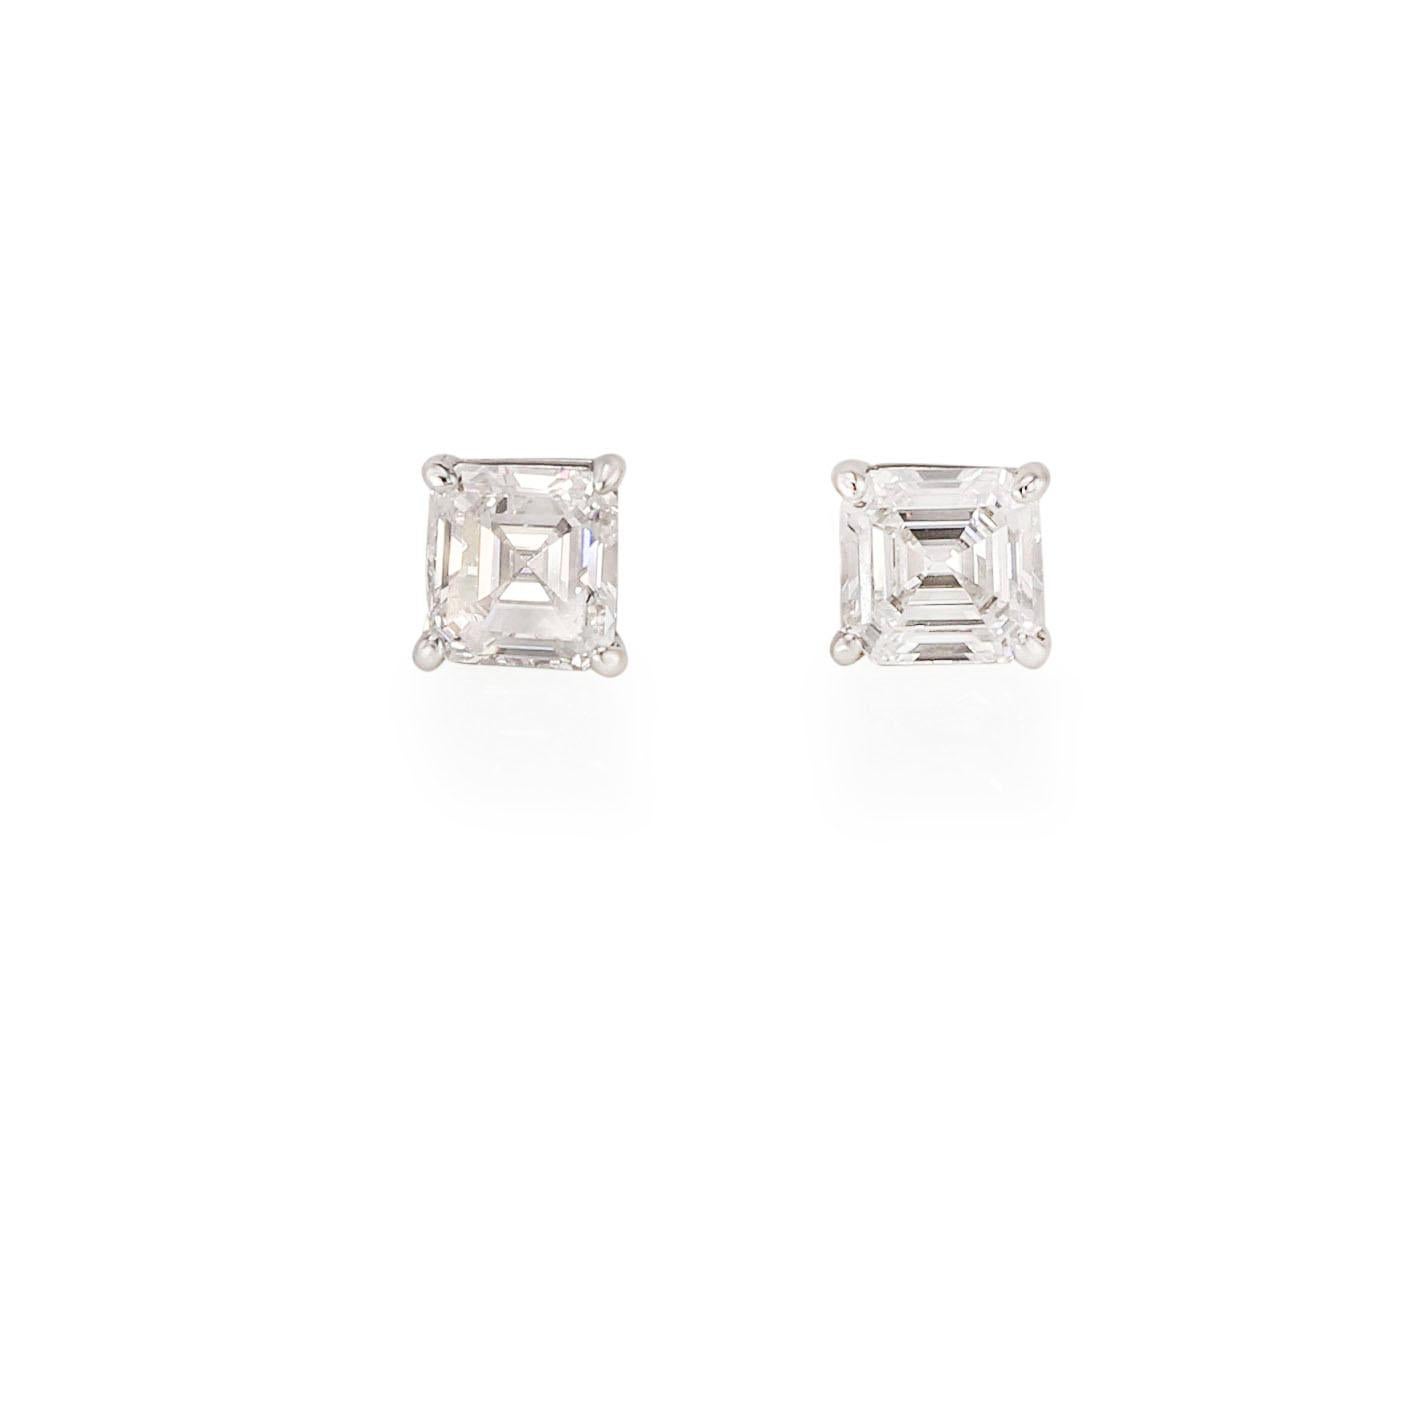 Emerald Cut Diamonds (2.24 ctw. GIA E-VVS2)
Platinum